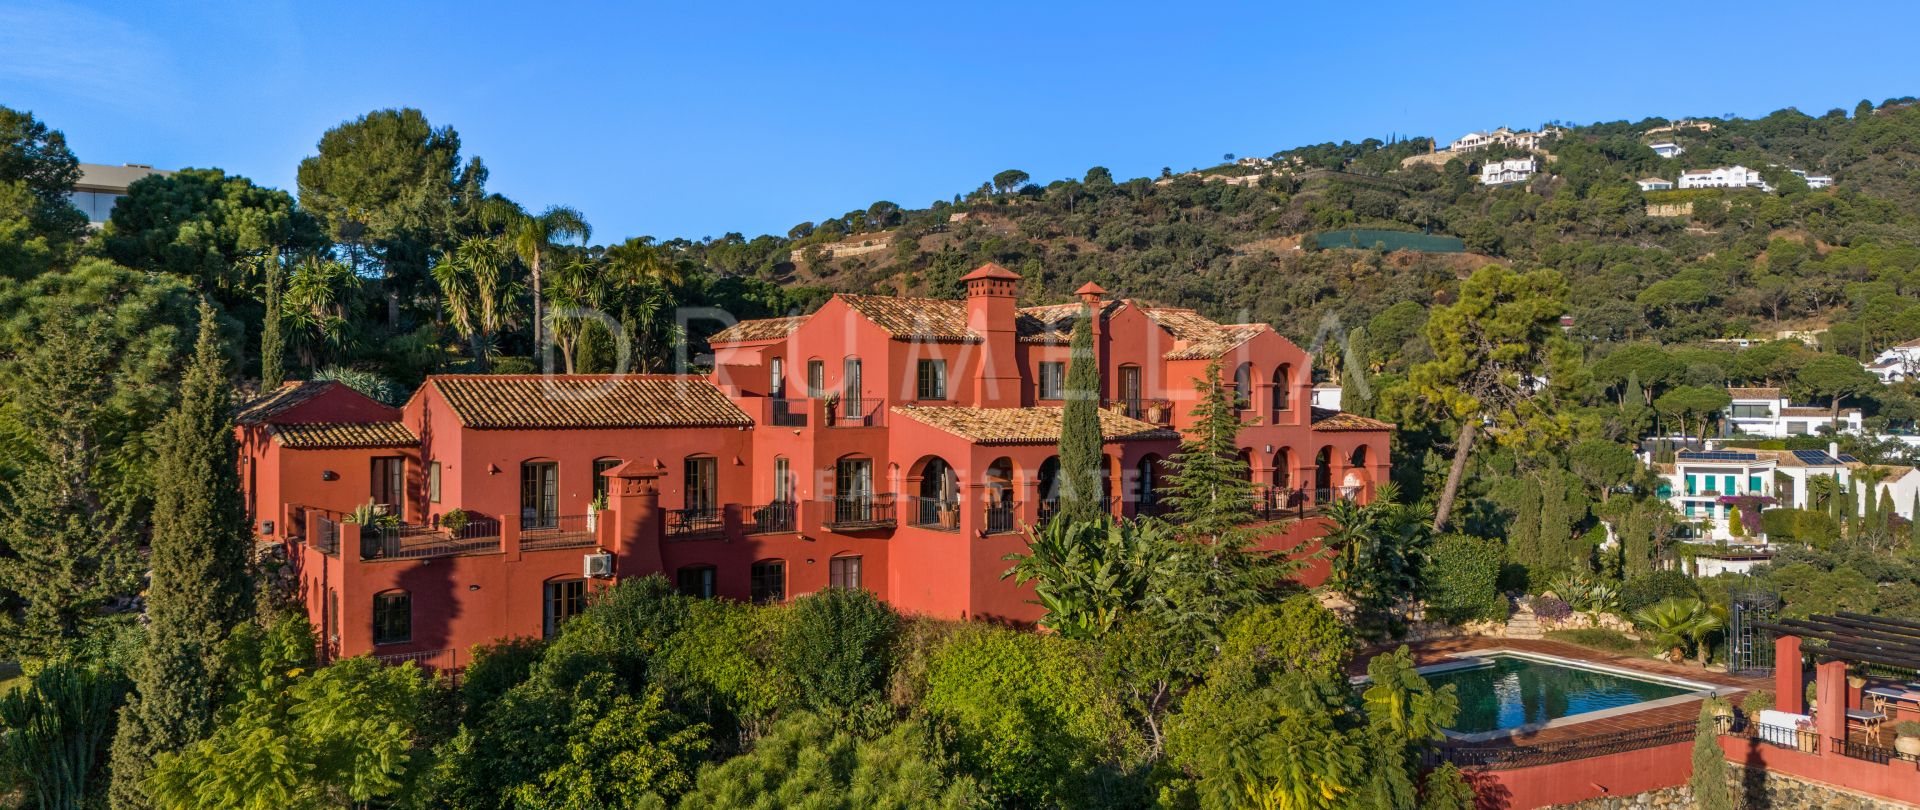 Villa in Andalusische stijl te koop in het hart van El Madroñal, Behanavis